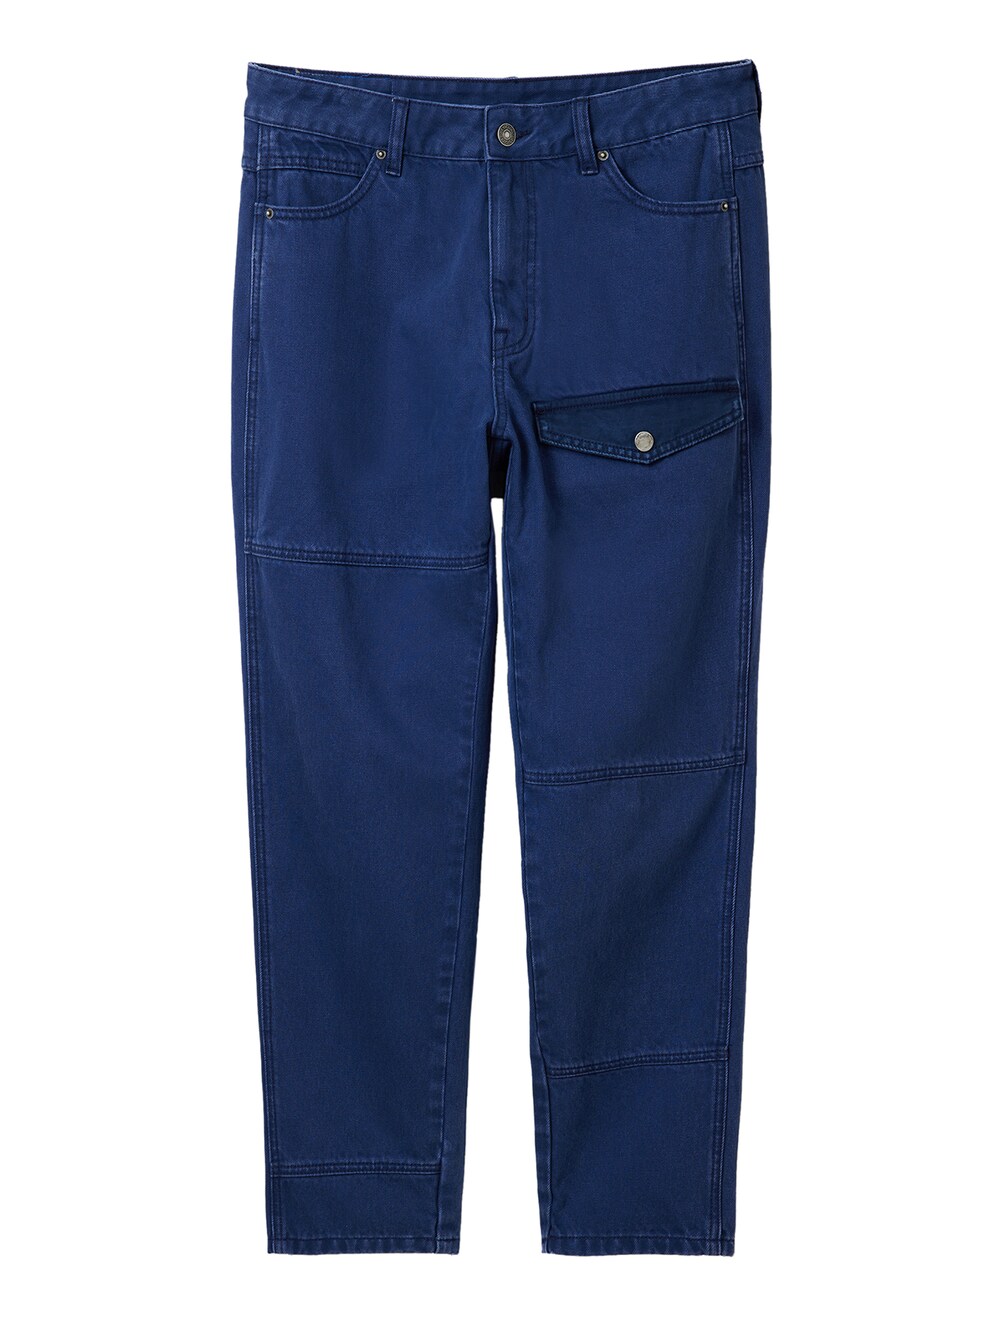 Обычные брюки Desigual Serge, темно-синий